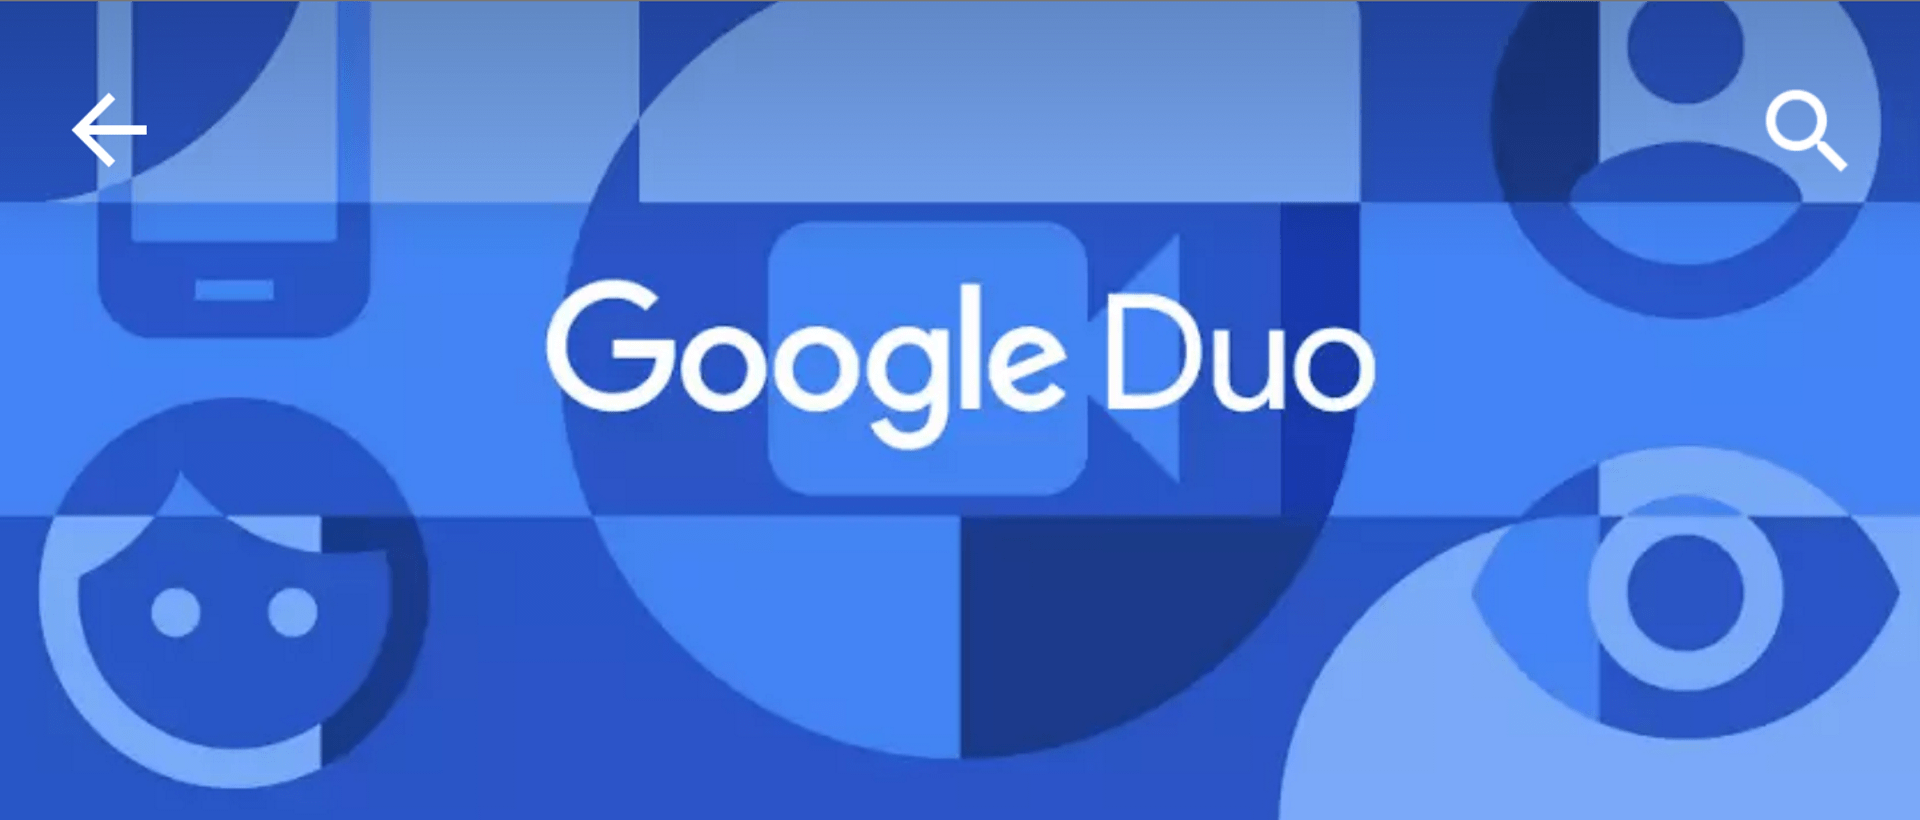 google-duo-hero.png